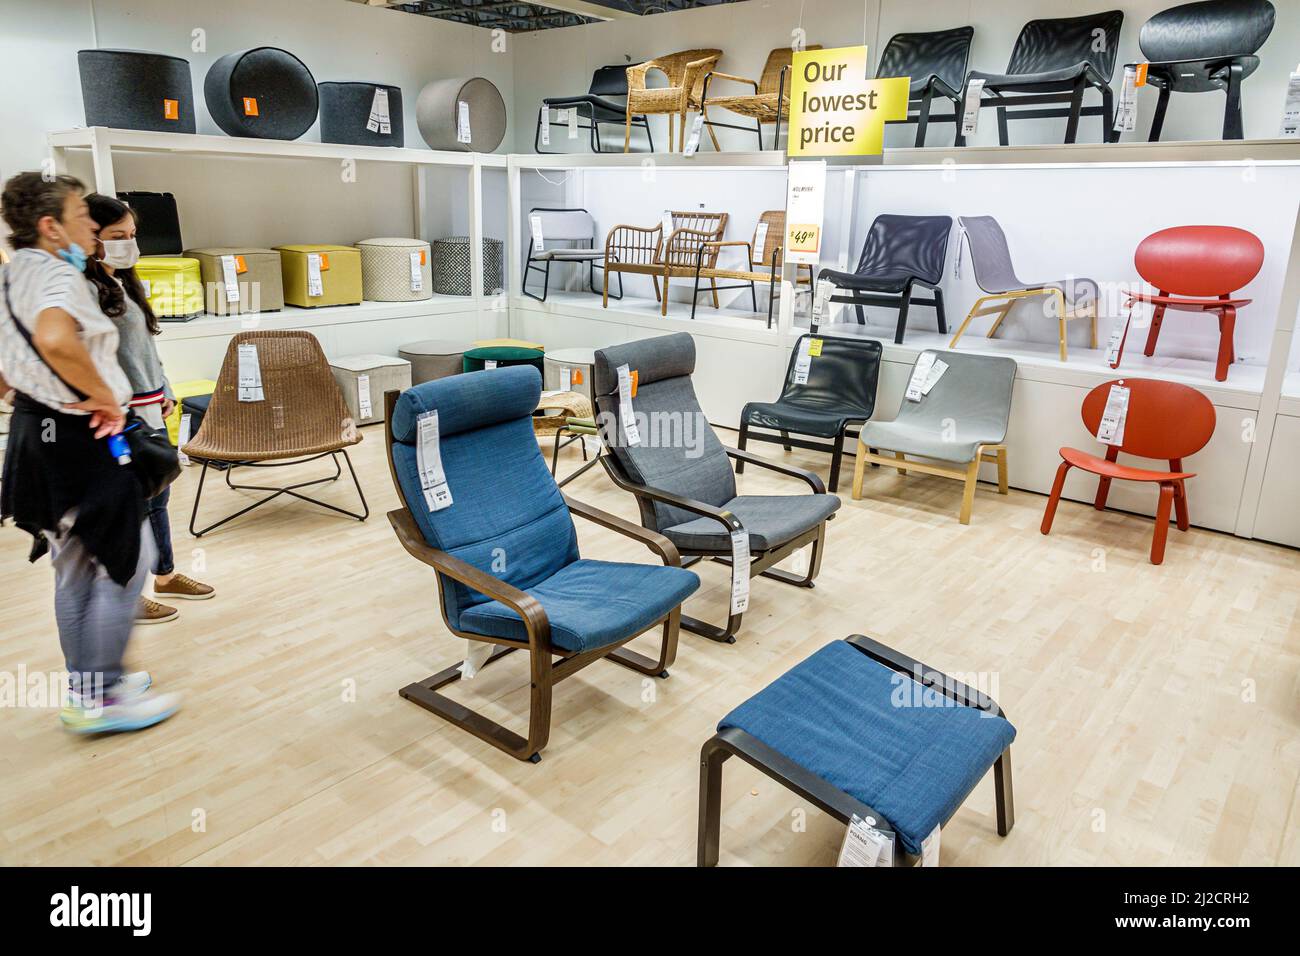 Miami Florida IKEA maison biens meubles accessoires meubles décor shopping acheteurs à l'intérieur de l'affichage intérieur vente mère fille chaises regardant Banque D'Images